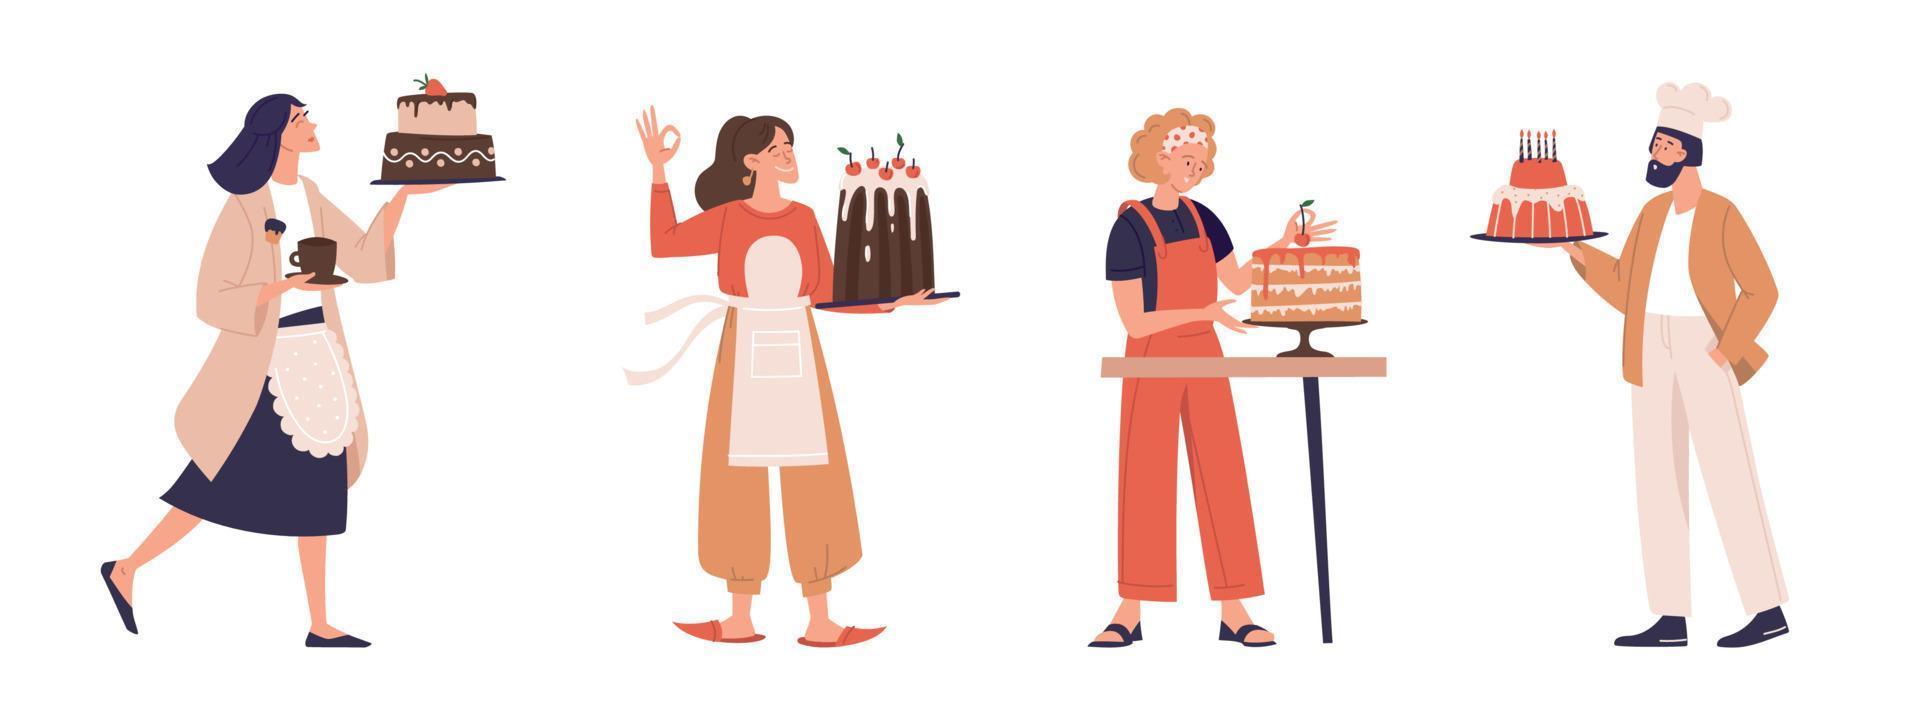 confeiteiro, cozinheiro, bolo, pastelaria. menina com um bolo. conjunto de ilustrações. imagem vetorial. vetor